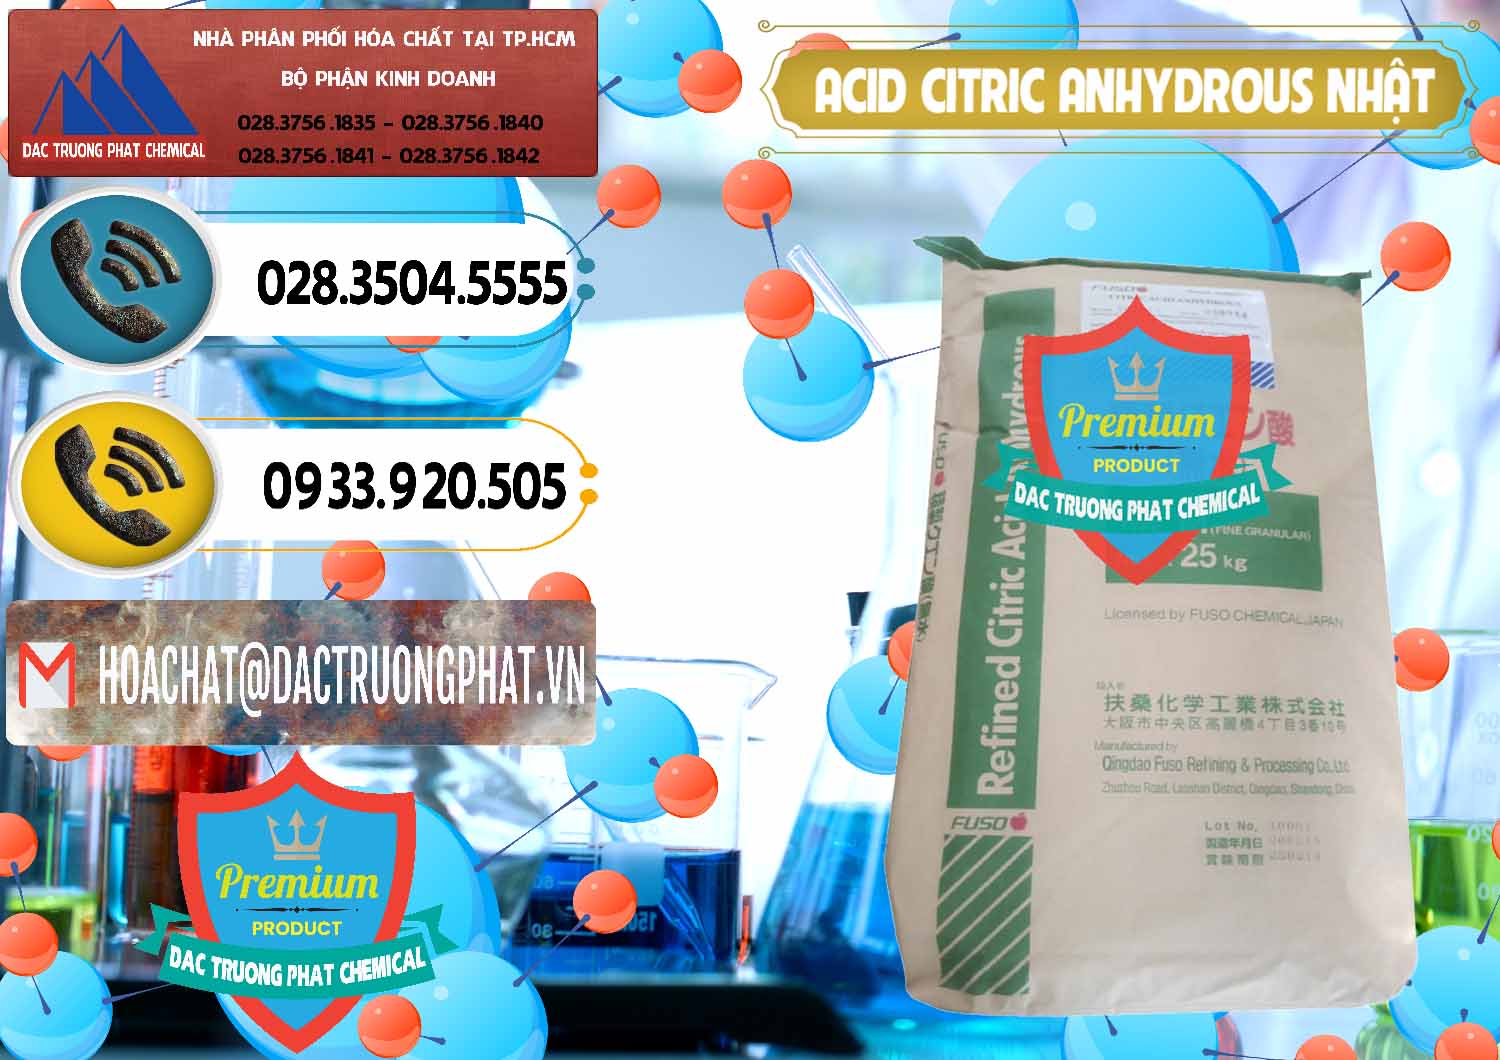 Đơn vị chuyên kinh doanh - bán Acid Citric - Axit Citric Anhydrous FUSO Nhật Japan - 0439 - Công ty chuyên nhập khẩu & cung cấp hóa chất tại TP.HCM - hoachatdetnhuom.vn